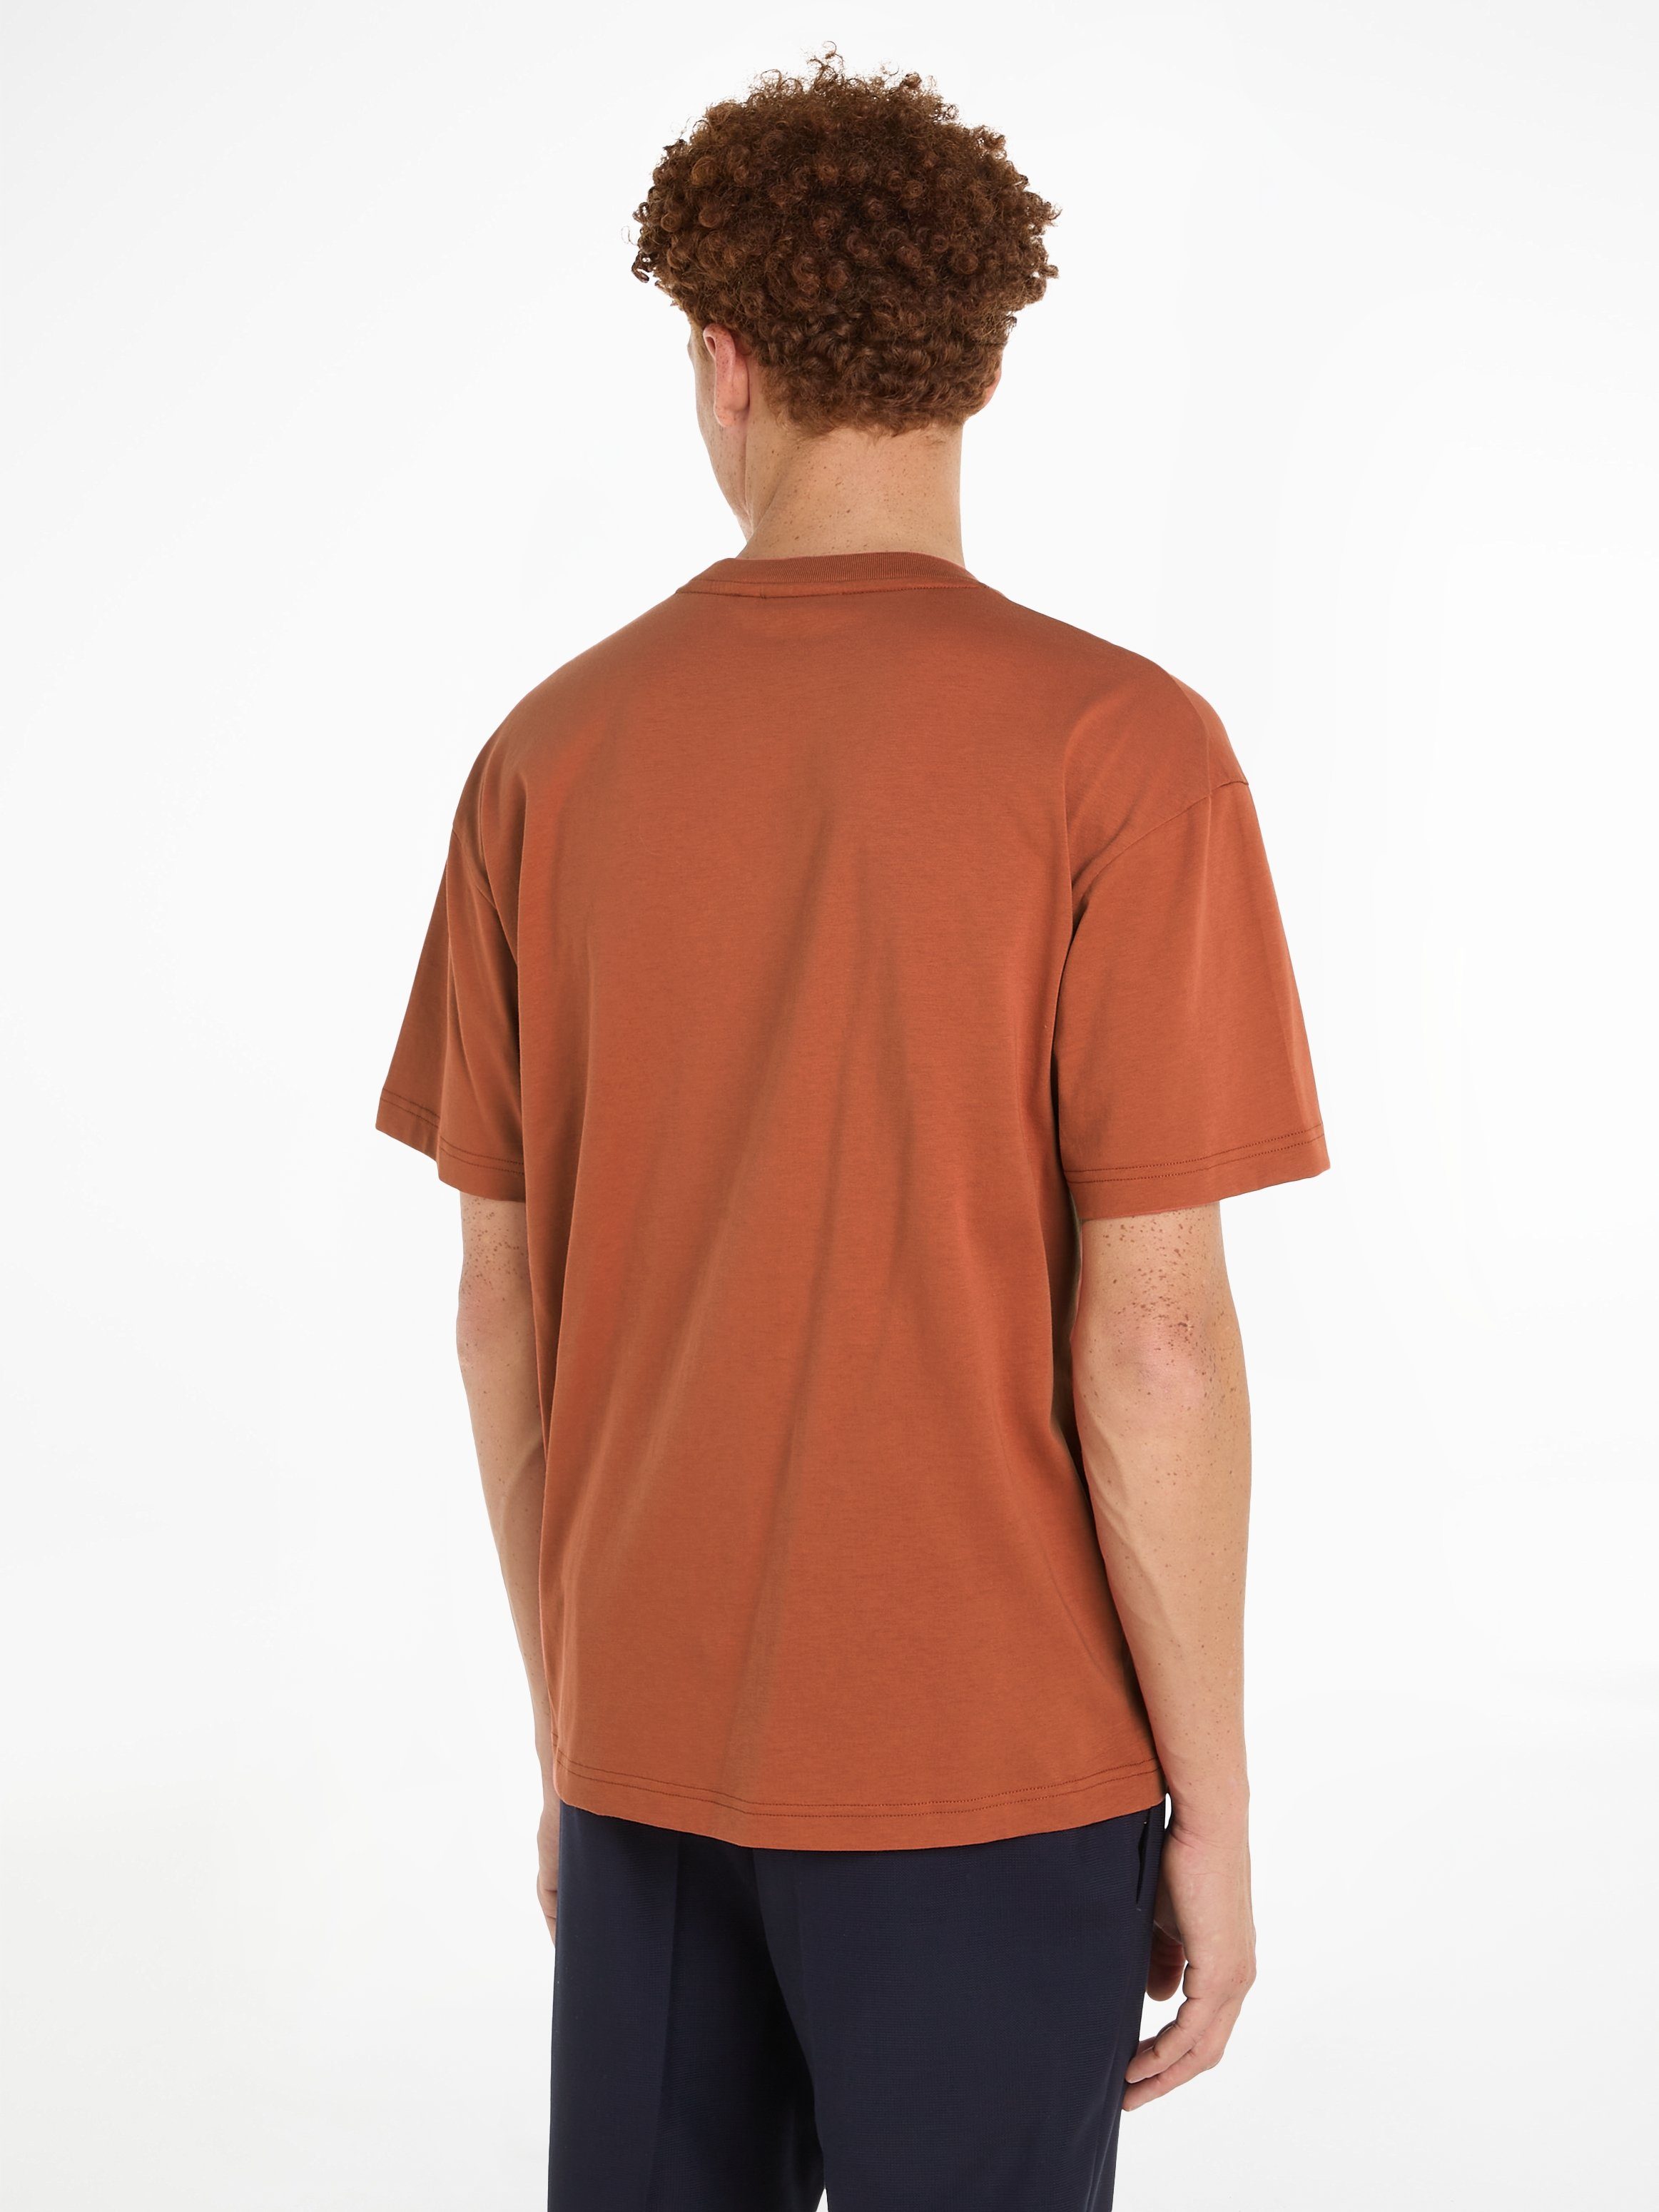 T-SHIRT Copper Sun HERO Klein Markenlabel T-Shirt aufgedrucktem mit COMFORT Calvin LOGO